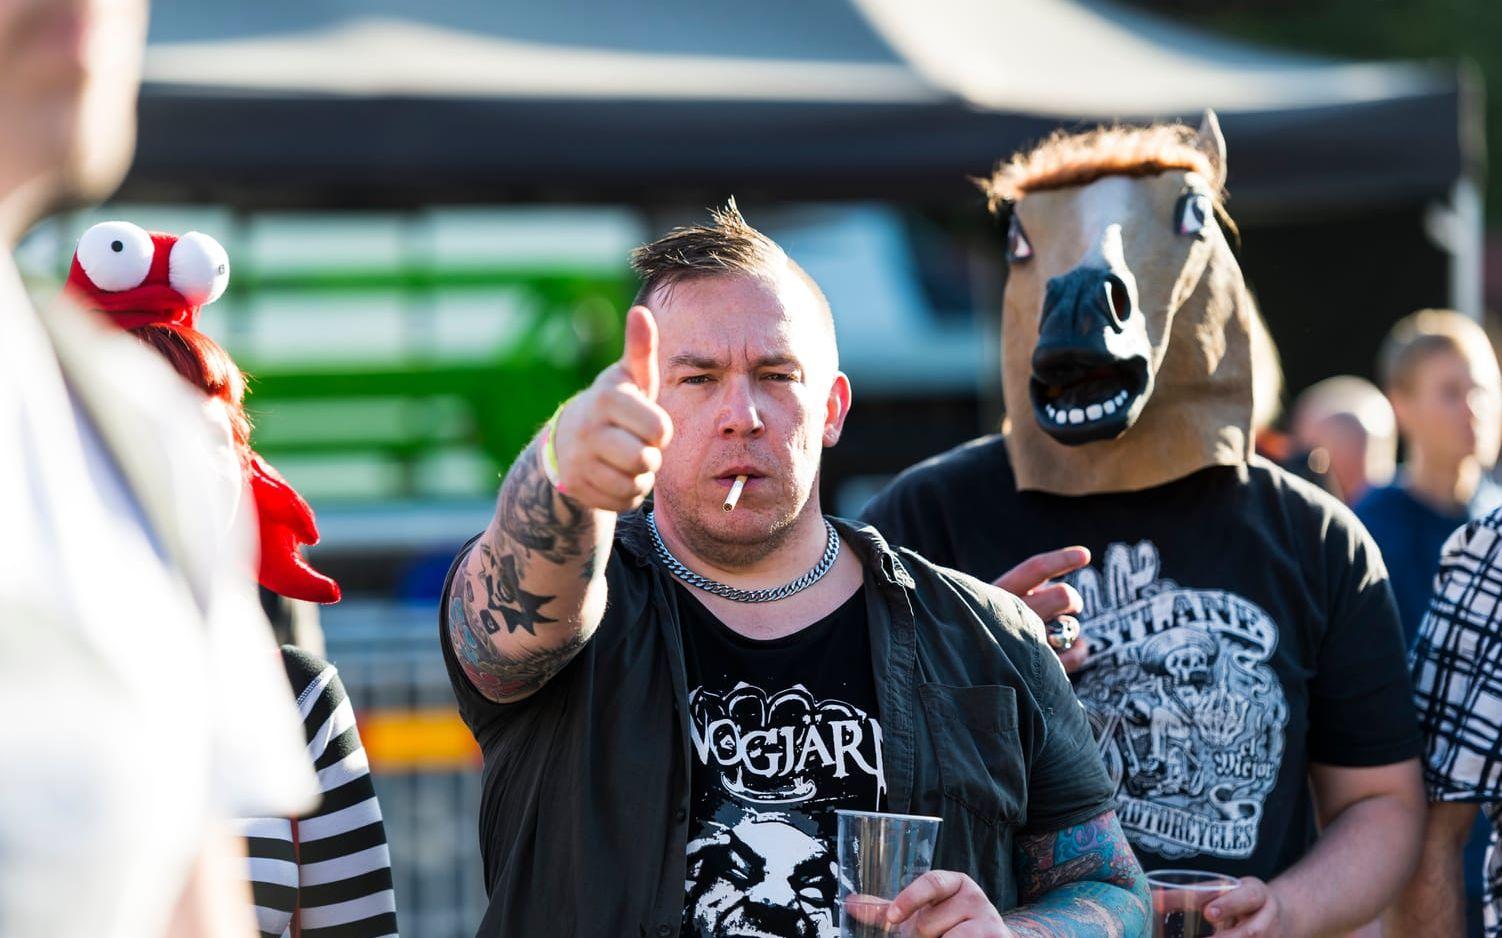 Tobias Egerzon och Jack Norberger hade med sig hästmasker till Vicious Rock festival.